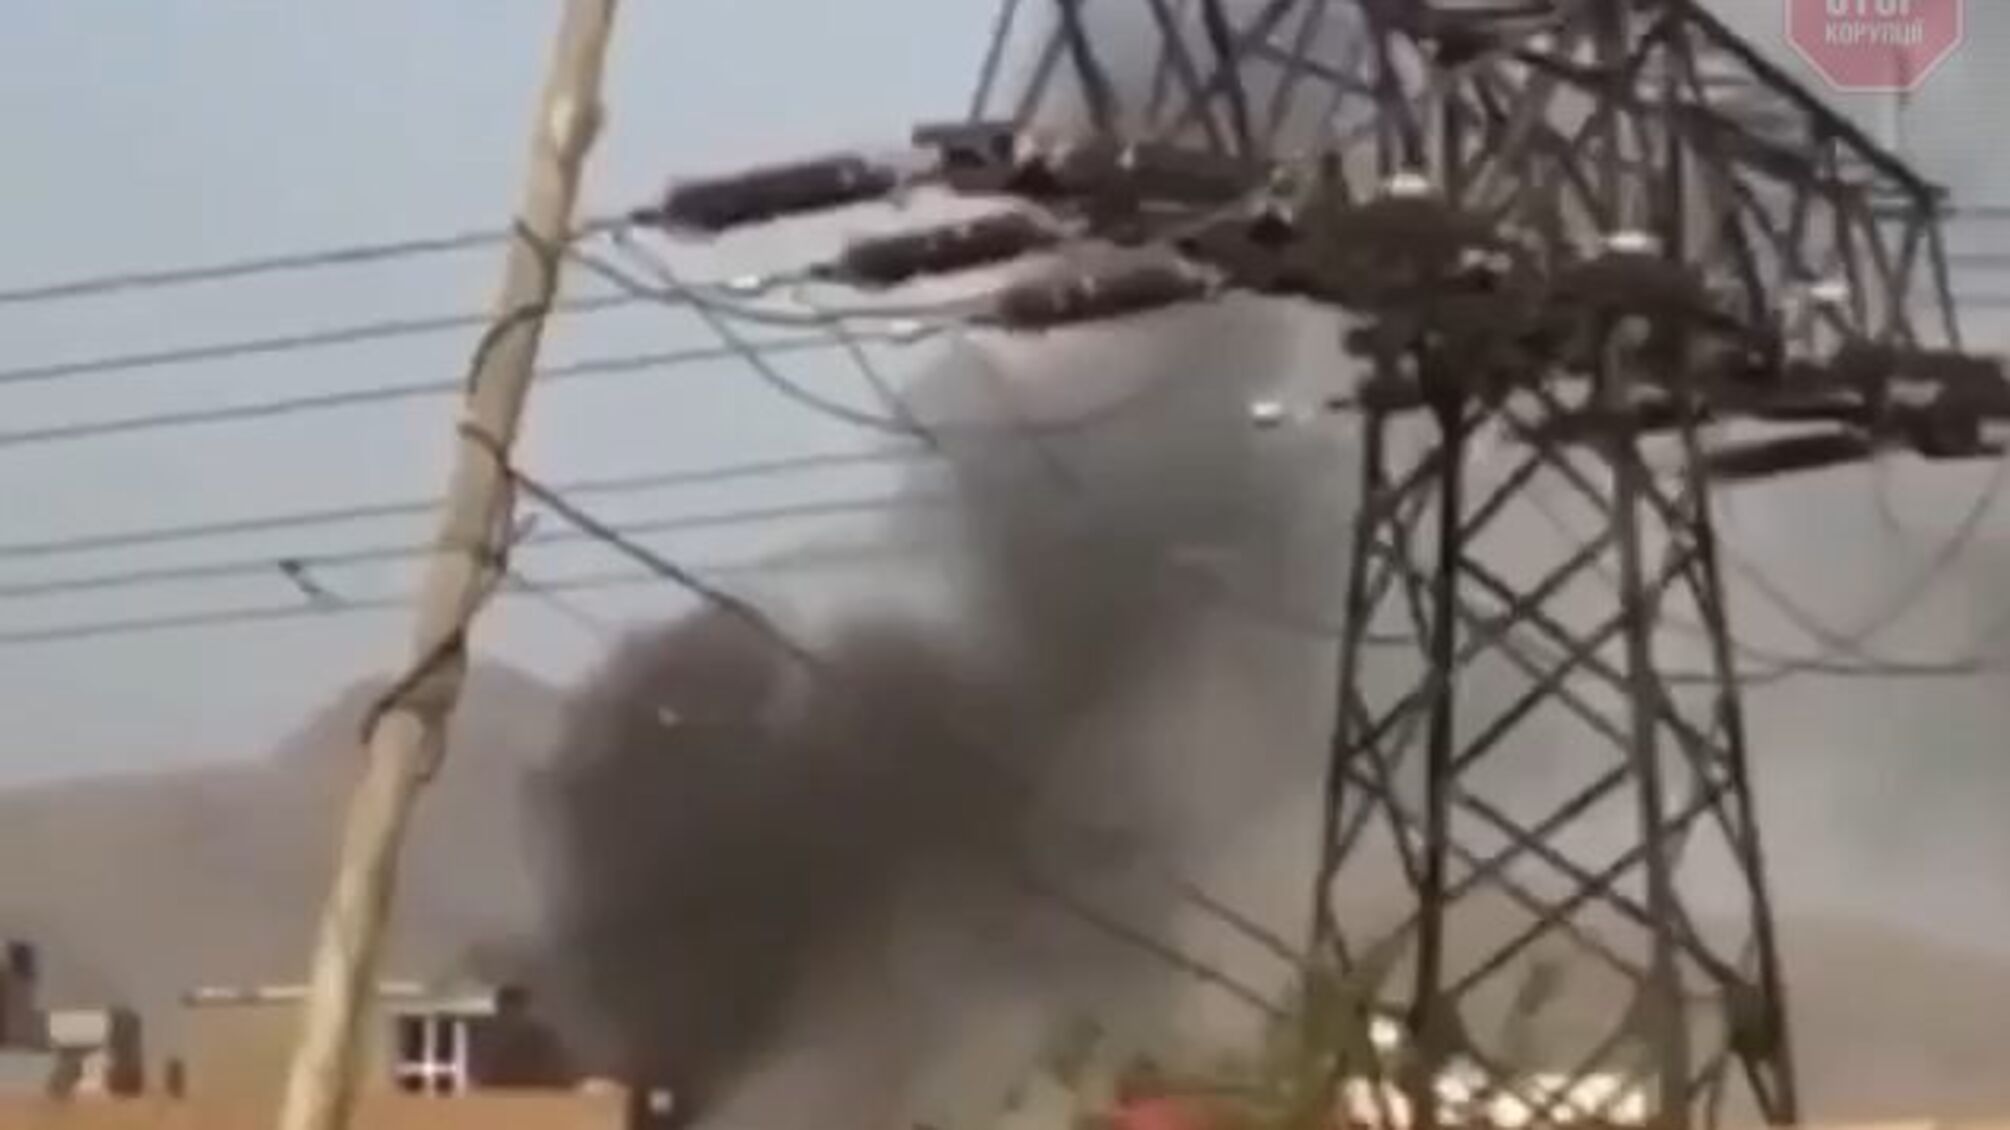 ЗМІ: У Кабулі прогримів новий вибух (відео)